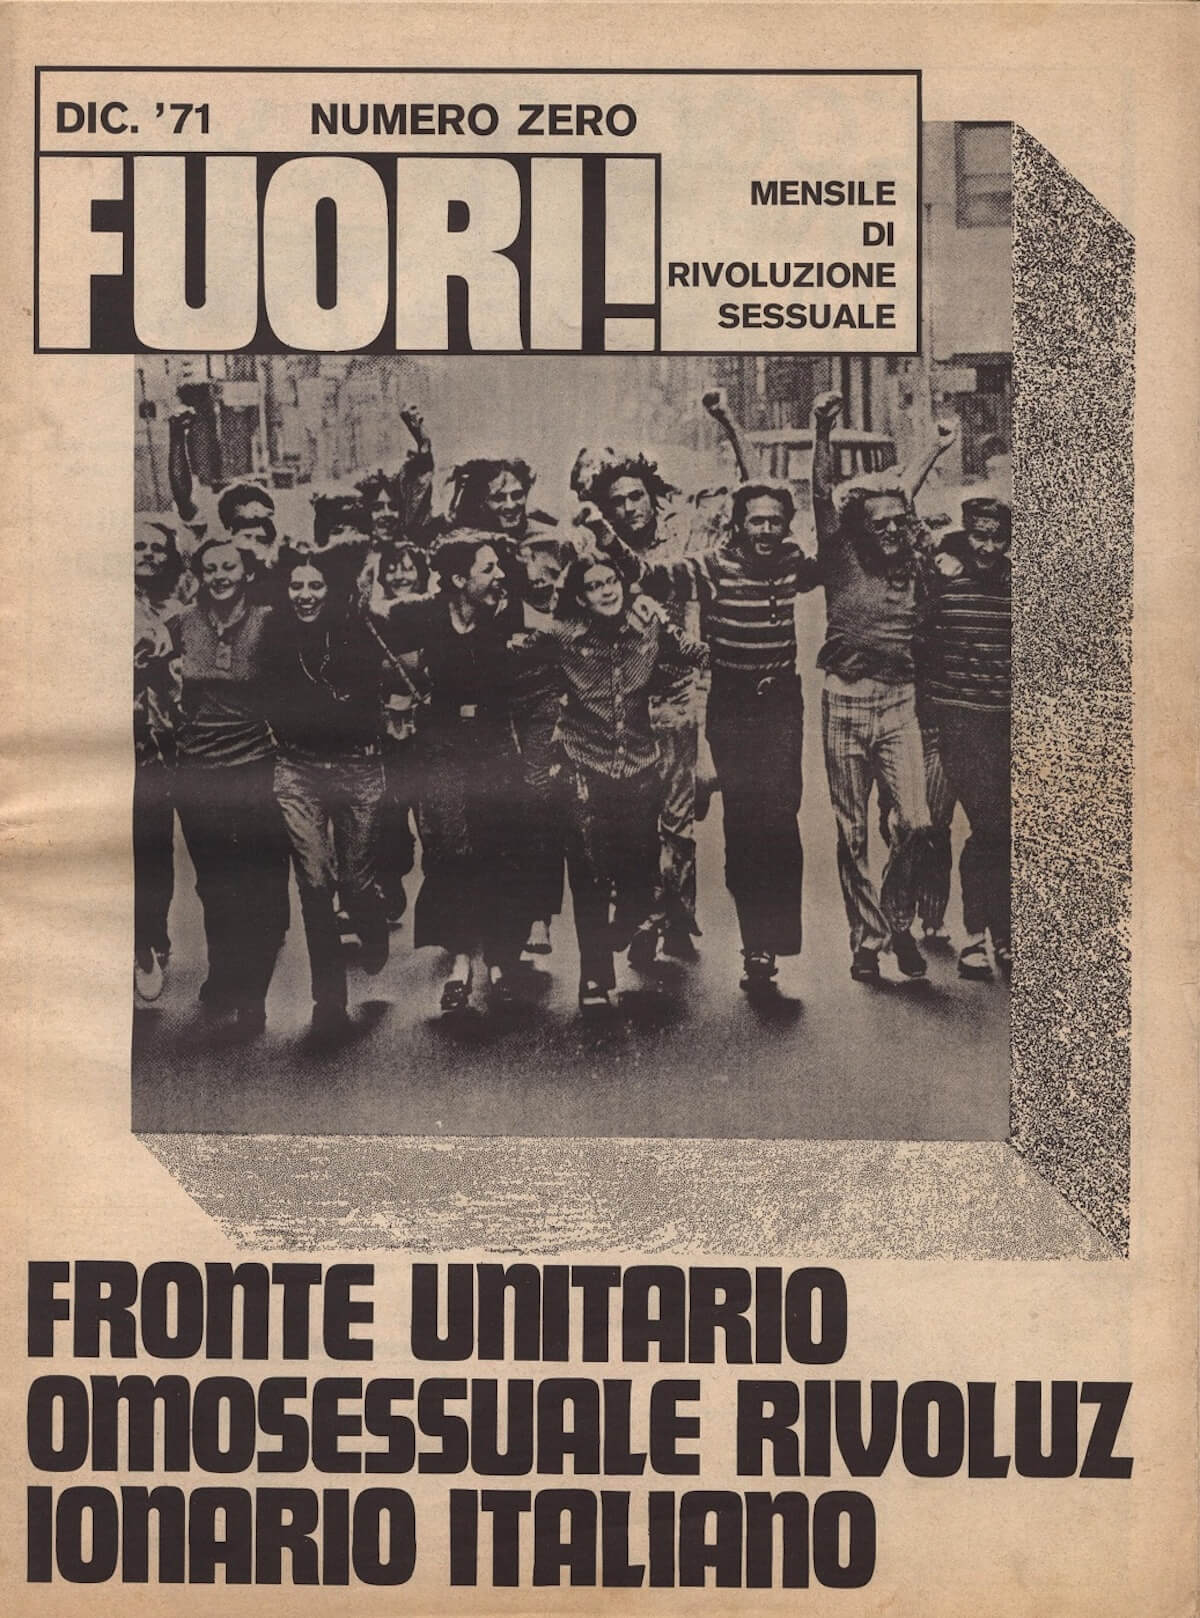 50 anni FUORI!, a Torino una mostra per celebrare la storia del movimento LGBT italiano - la gallery - FUORI 0 - Gay.it